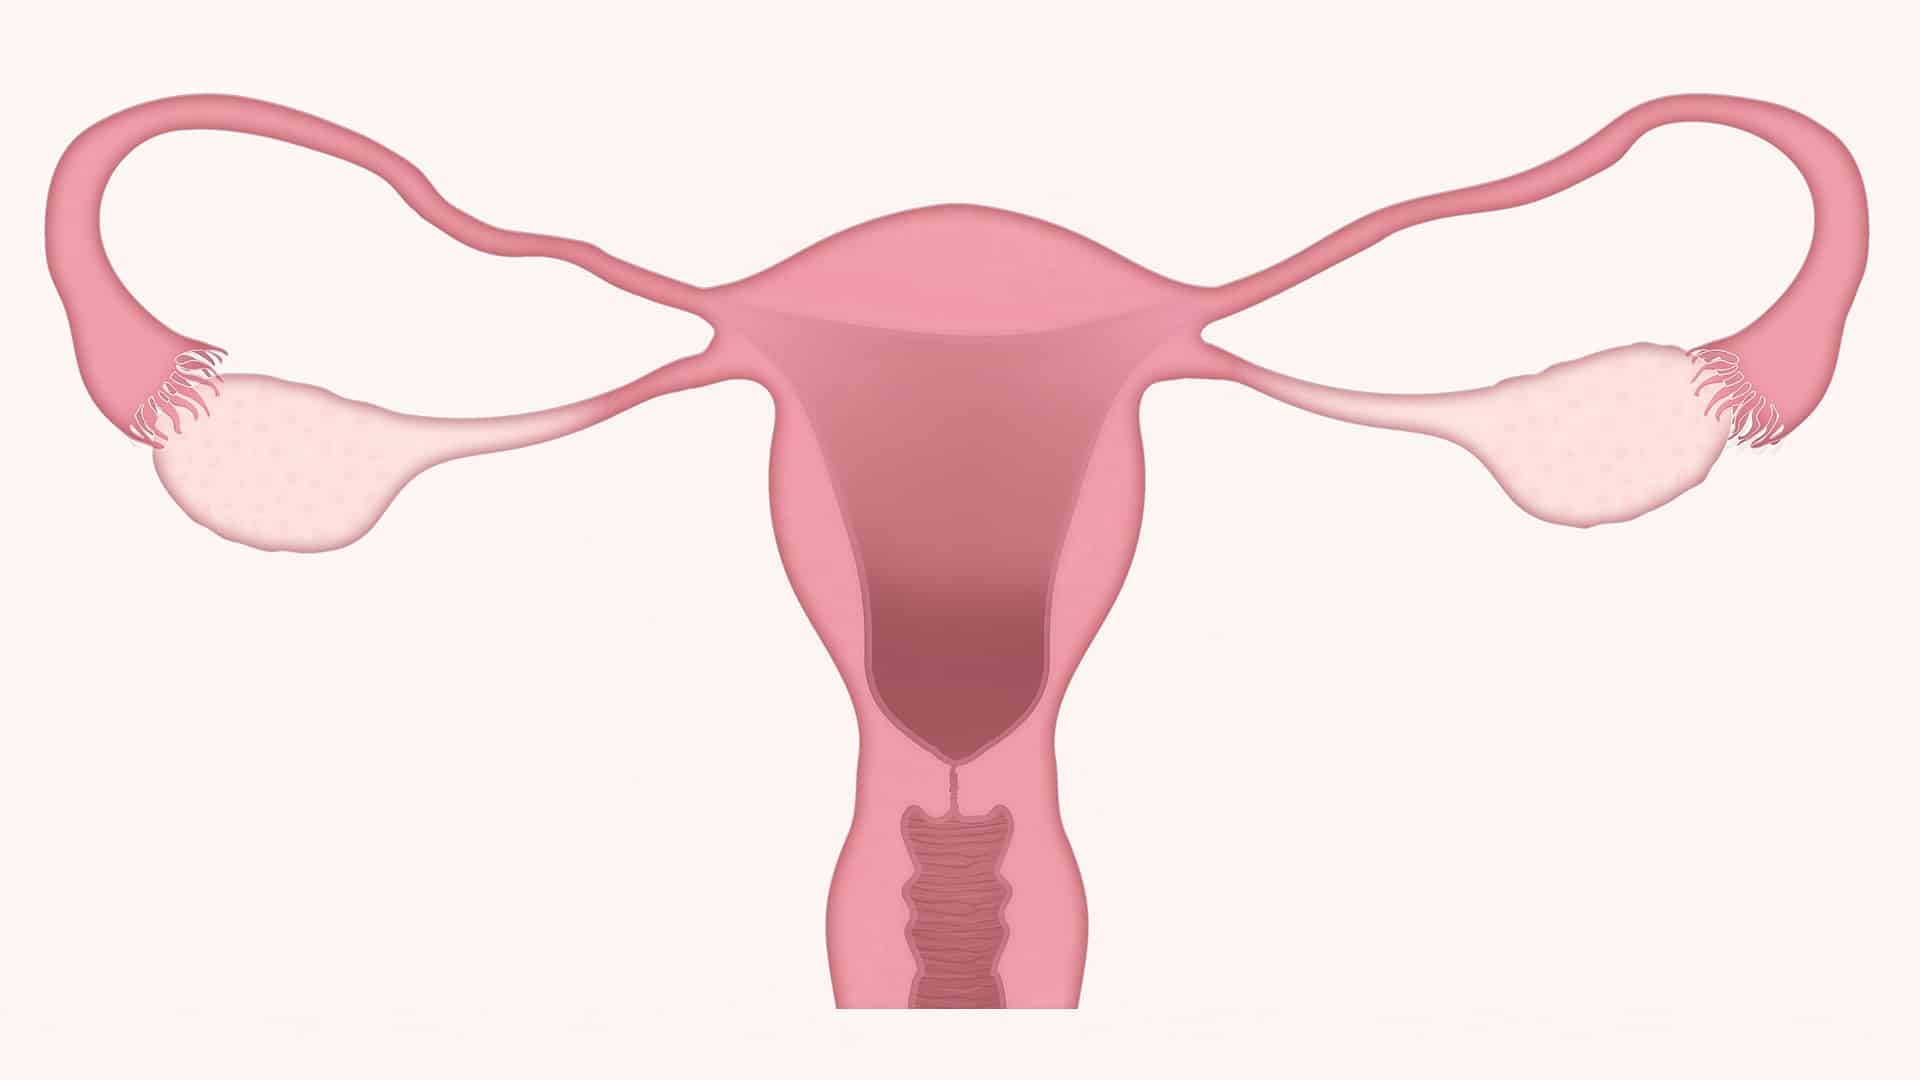 Ženy, znáte 5 příznaků rakoviny vaječníků?